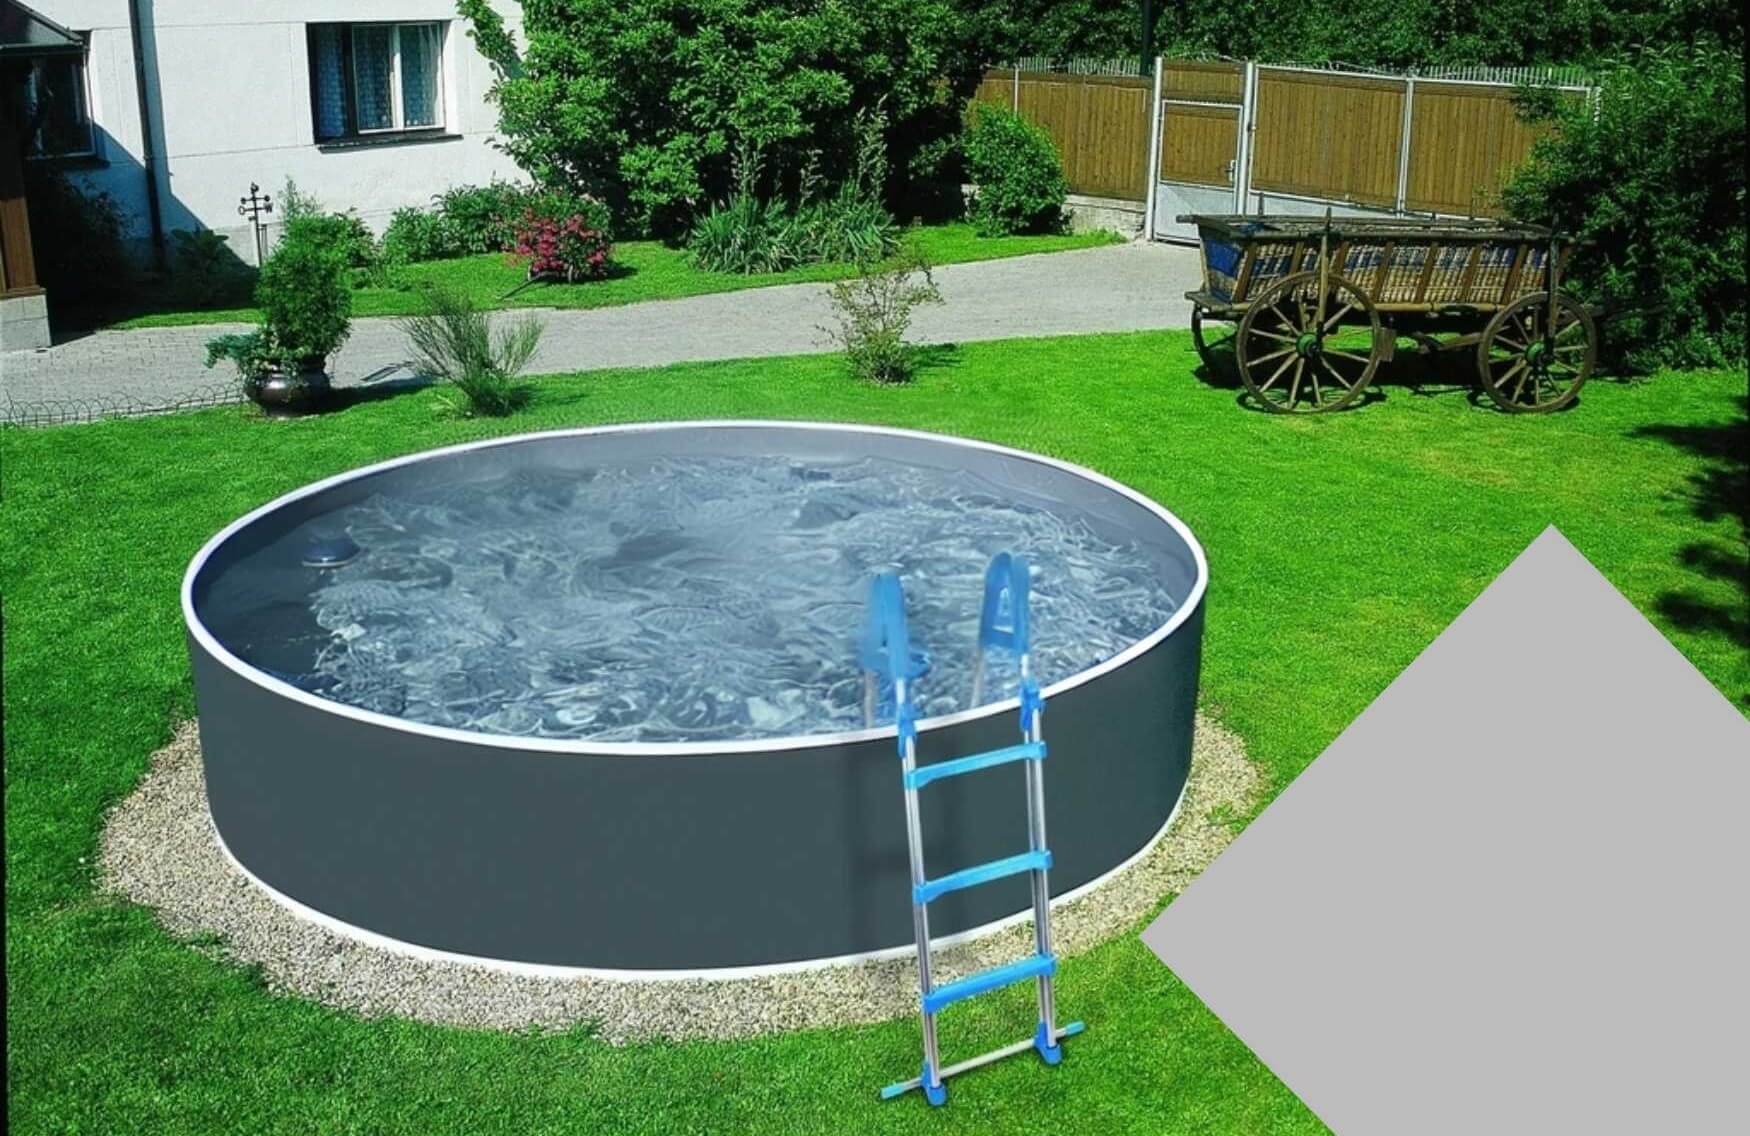 Planet Pool Bazénová fólie Grey pro bazén průměr 3,6 m x 0,92 m - šedá barva